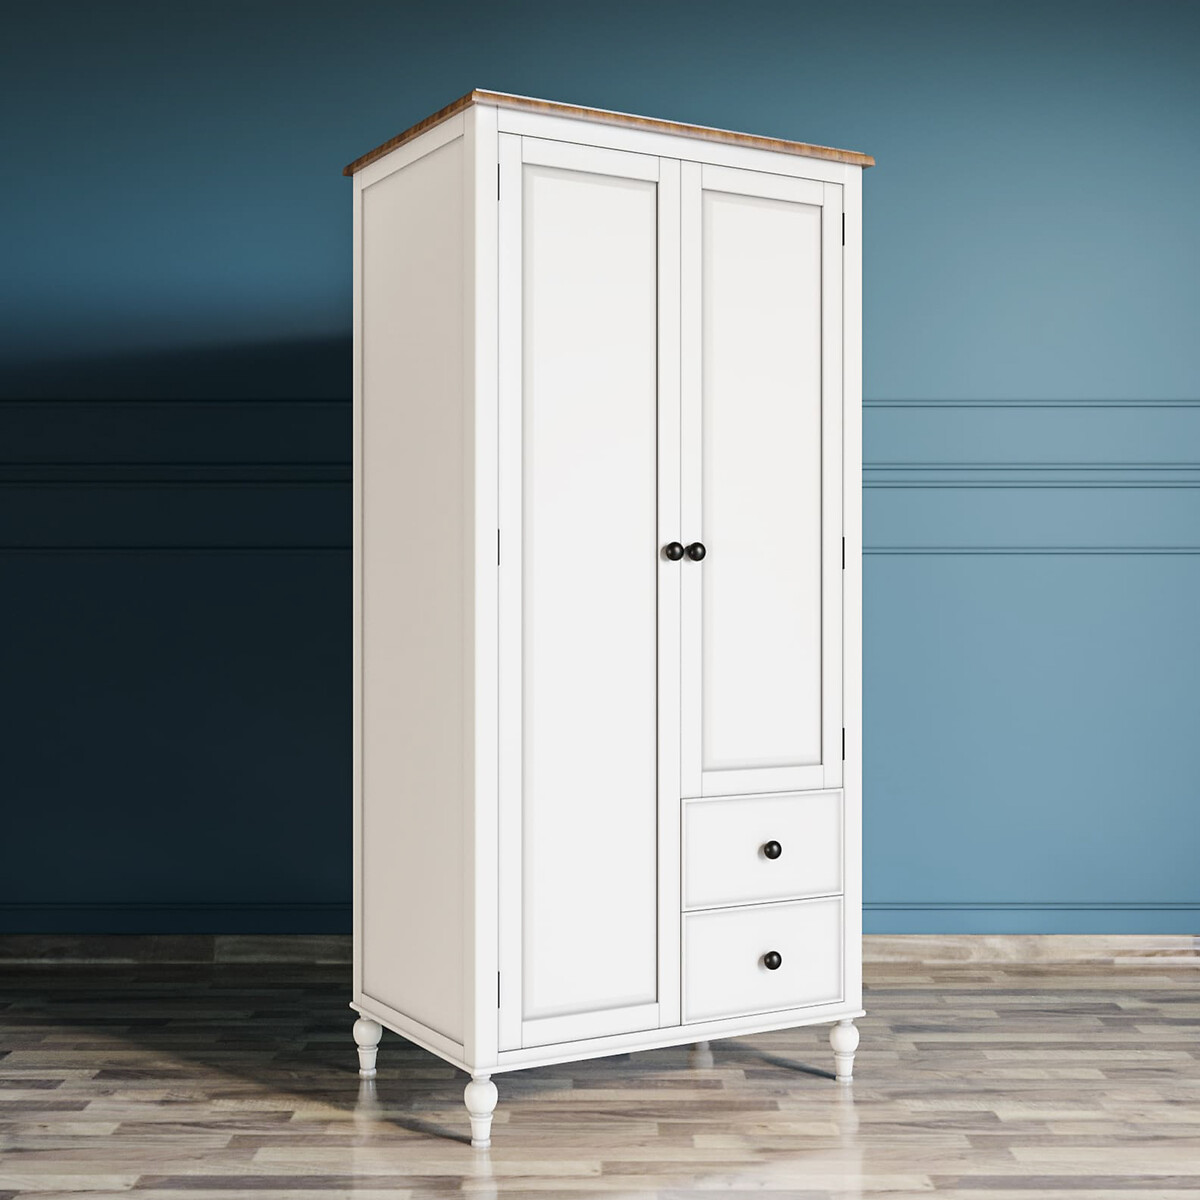 Шкаф двухстворчатый Odri с двумя ящиками  единый размер белый